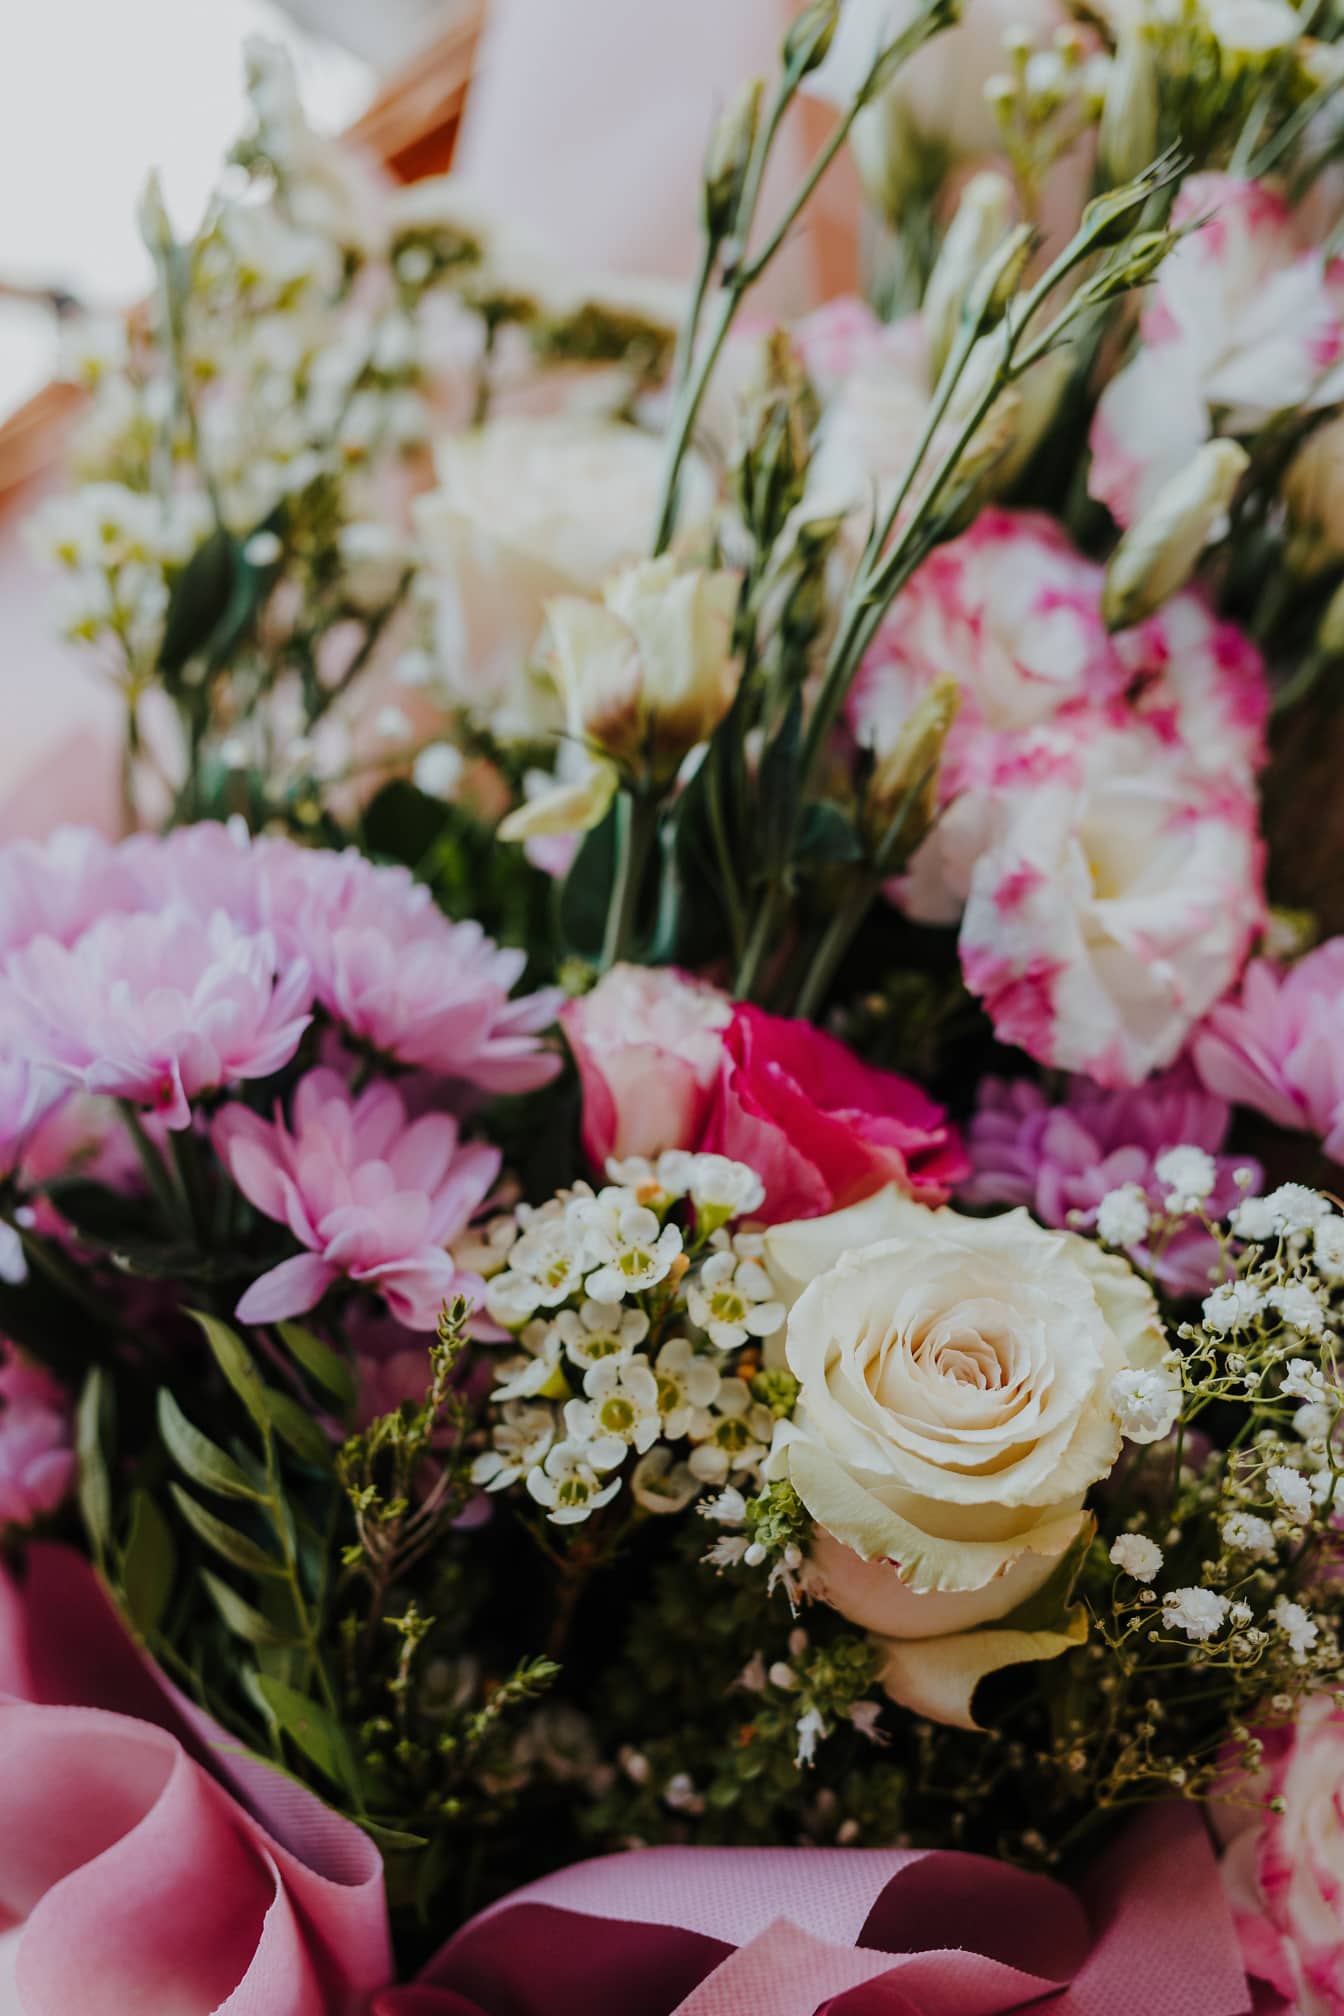 ภาพระยะใกล้ของช่อดอกไม้ที่สวยงามด้วยดอกไม้สีชมพูและดอกกุหลาบสีขาว